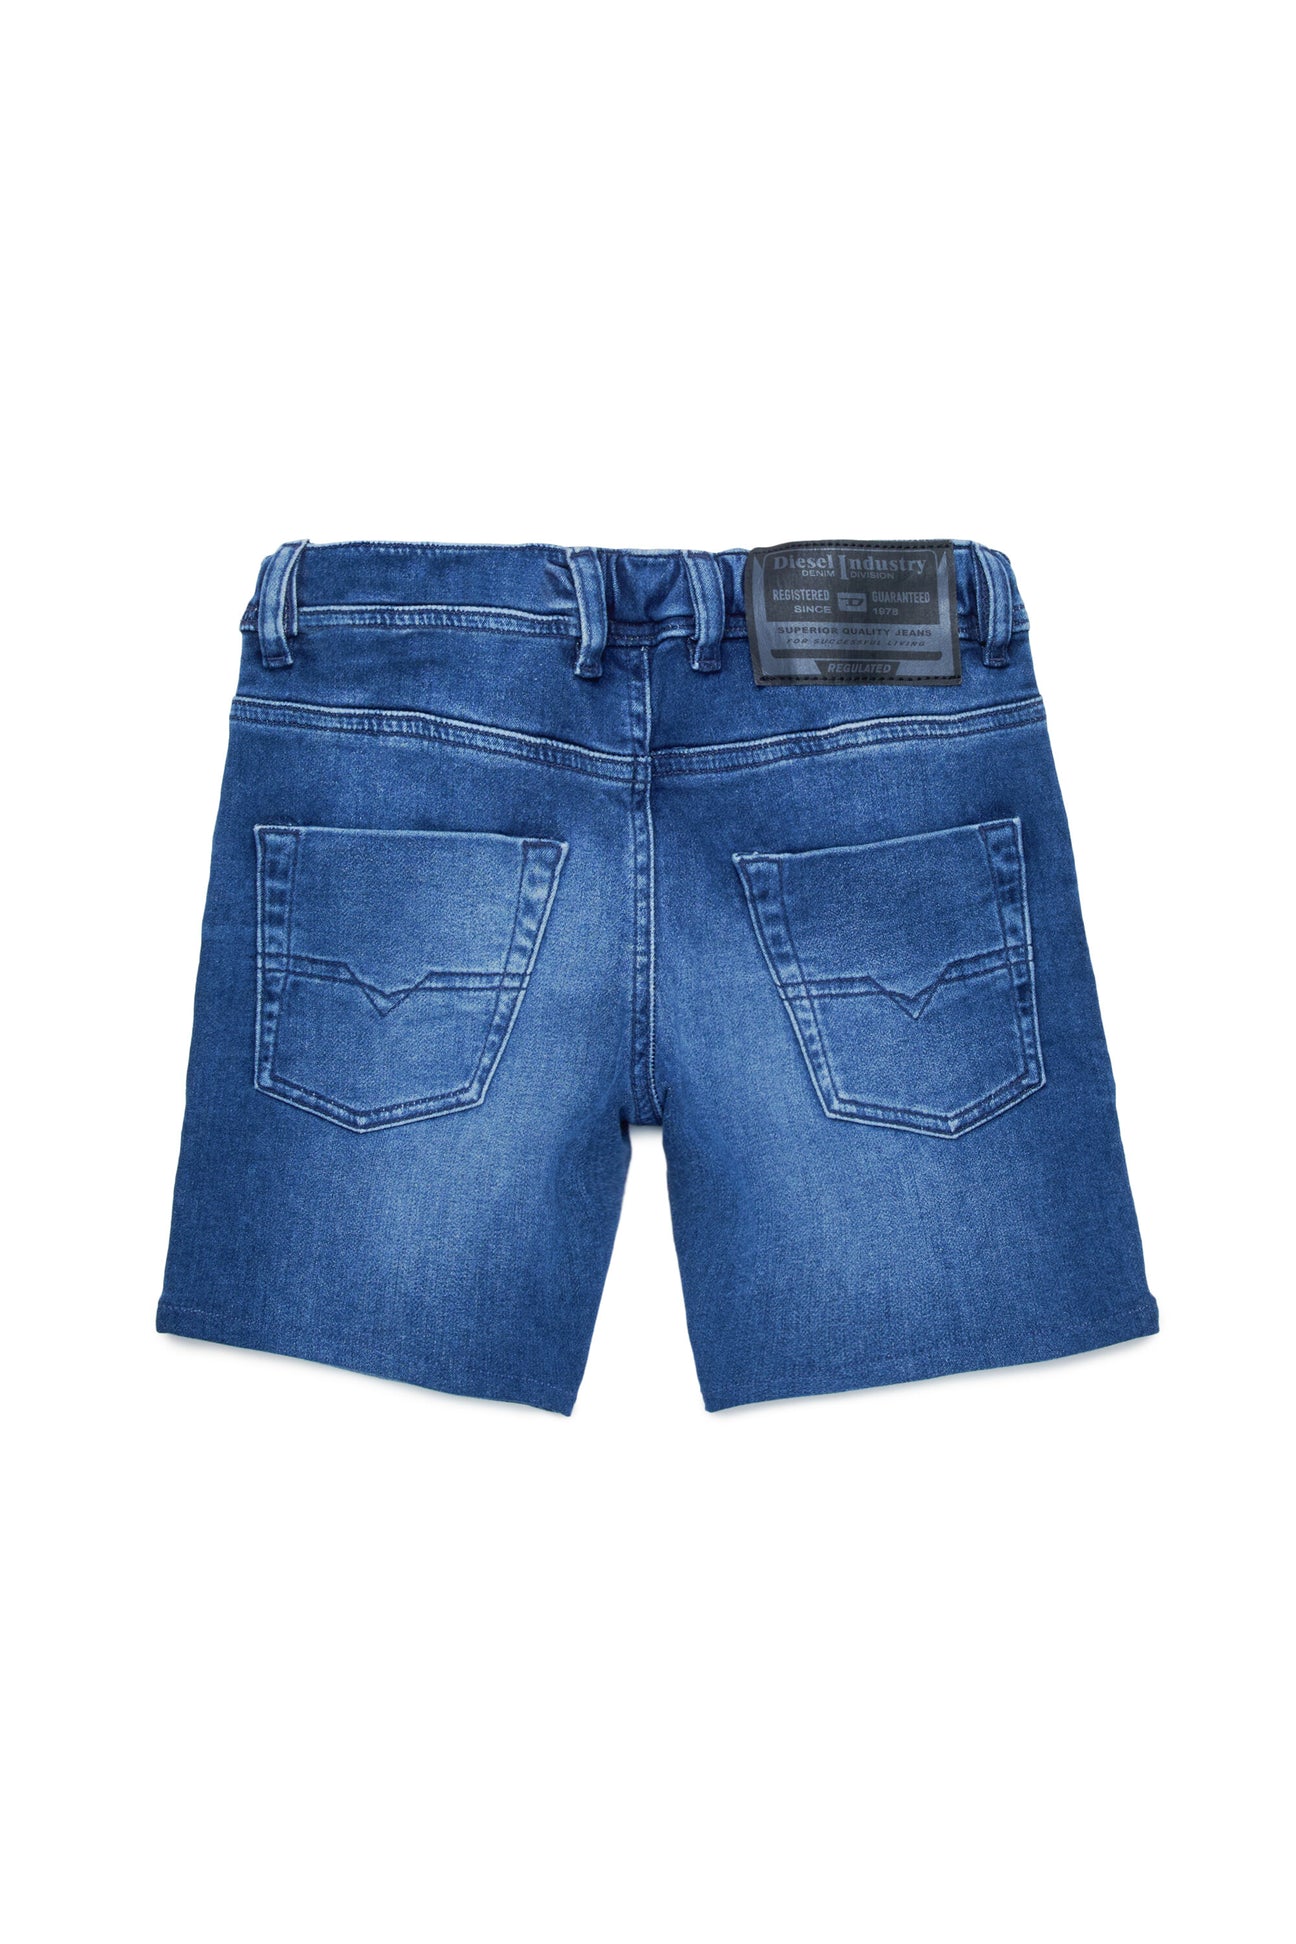 Pantalones cortos JoggJeans® azul oscuro con mallas Pantalones cortos JoggJeans® azul oscuro con mallas